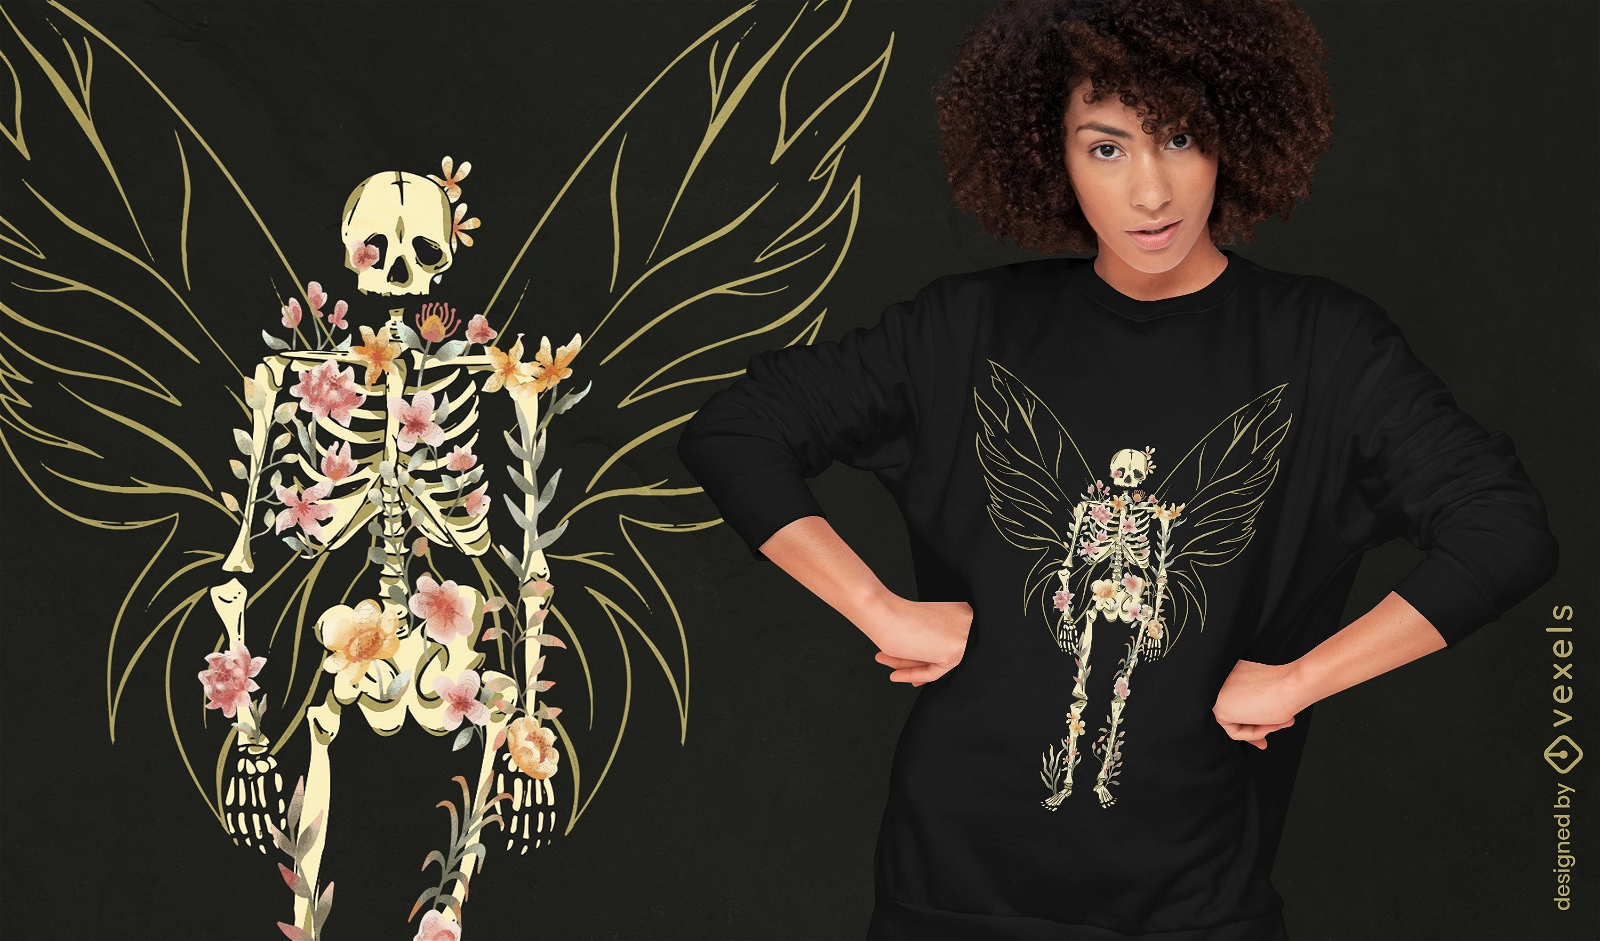 Dise?o de camiseta de esqueleto de mariposa floral.